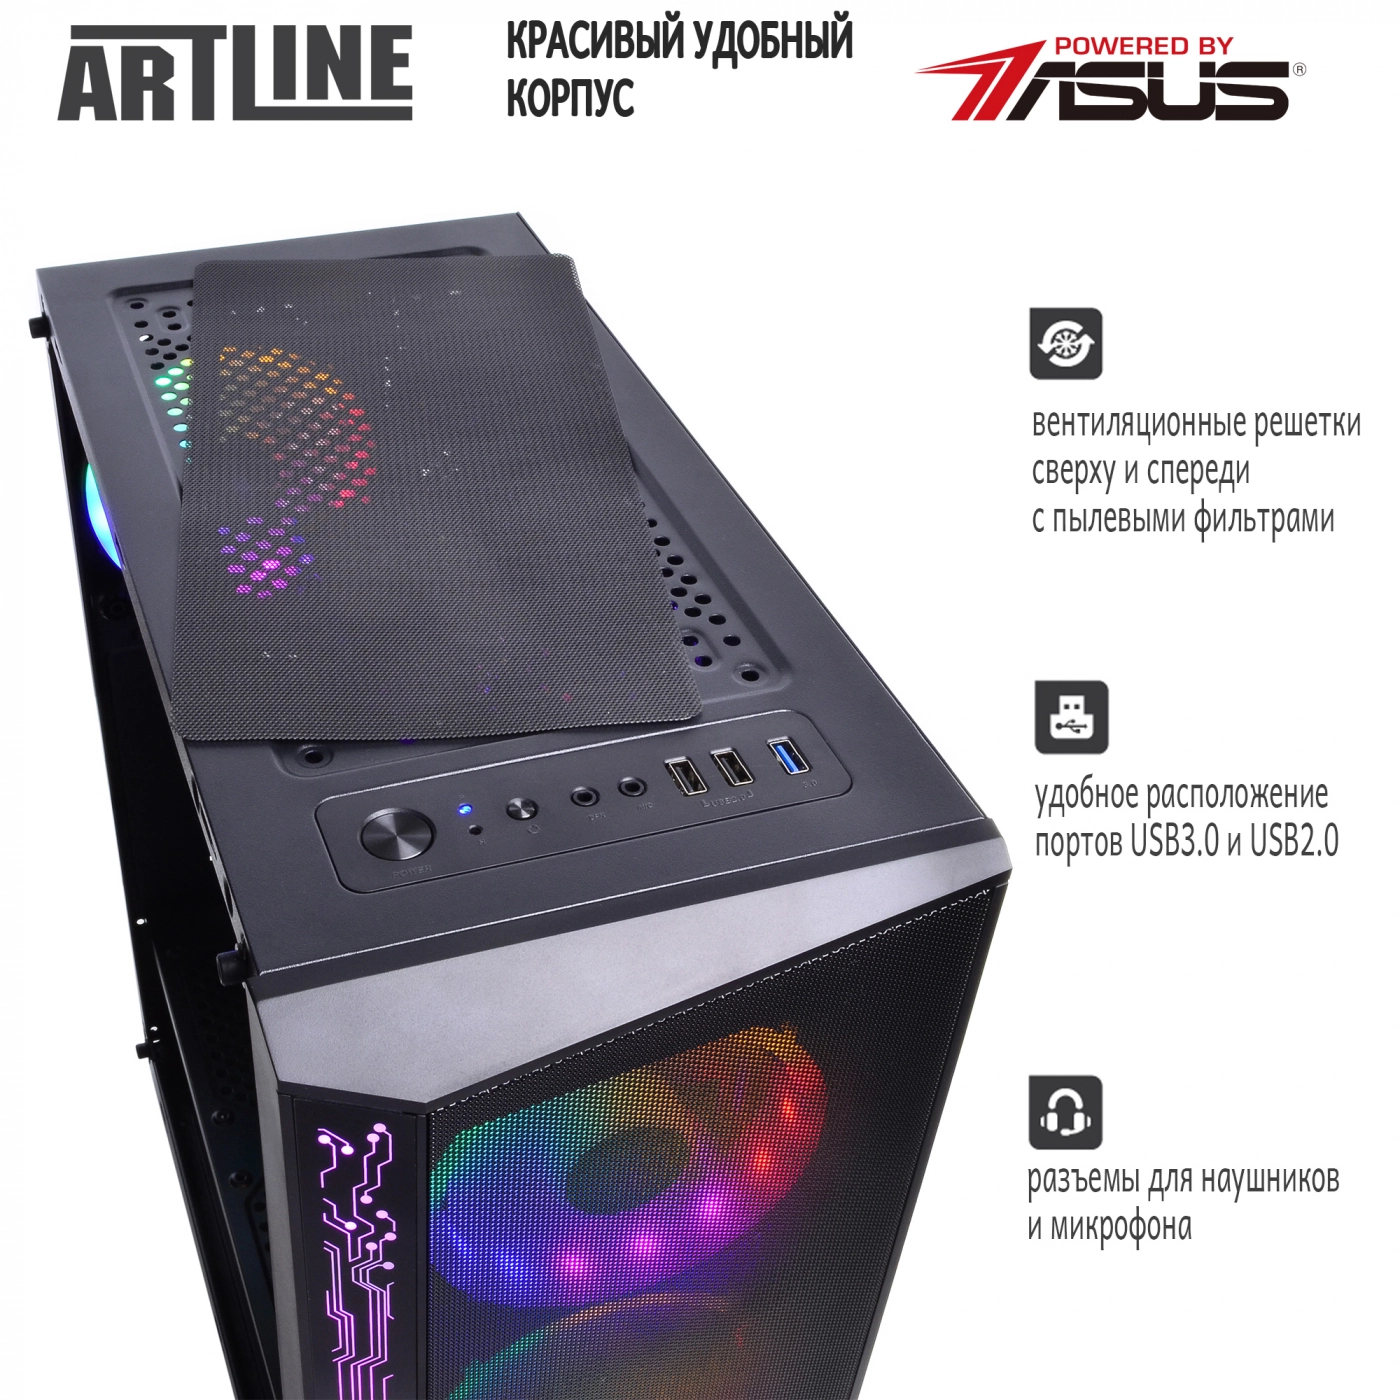 Купить Компьютер ARTLINE Gaming X68v07 - фото 4